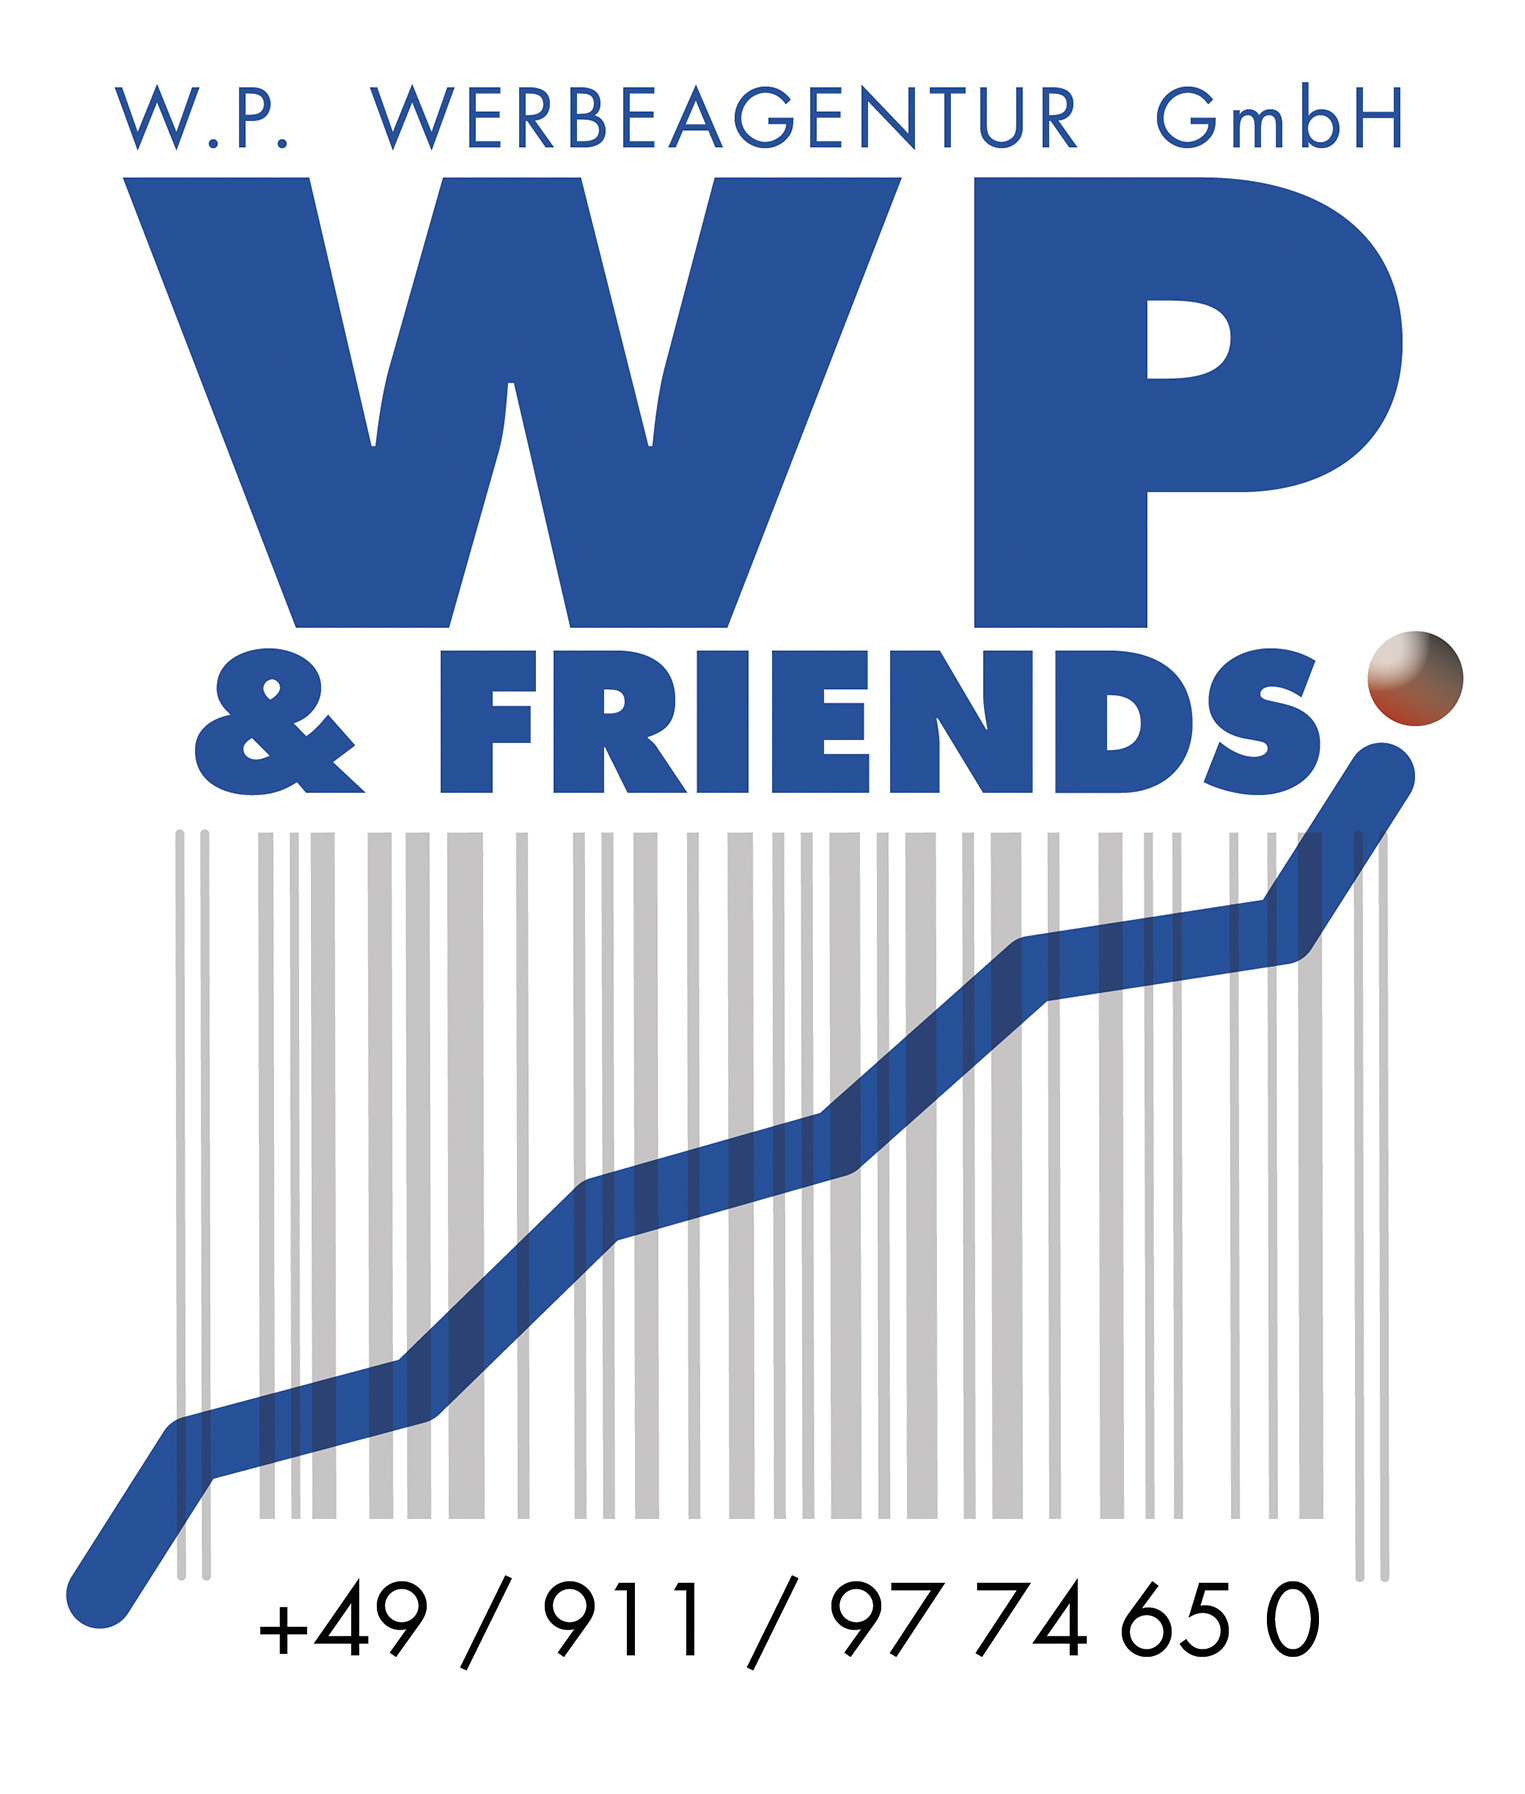 W.P.Werbeagentur GmbH – W.P. & FRIENDS